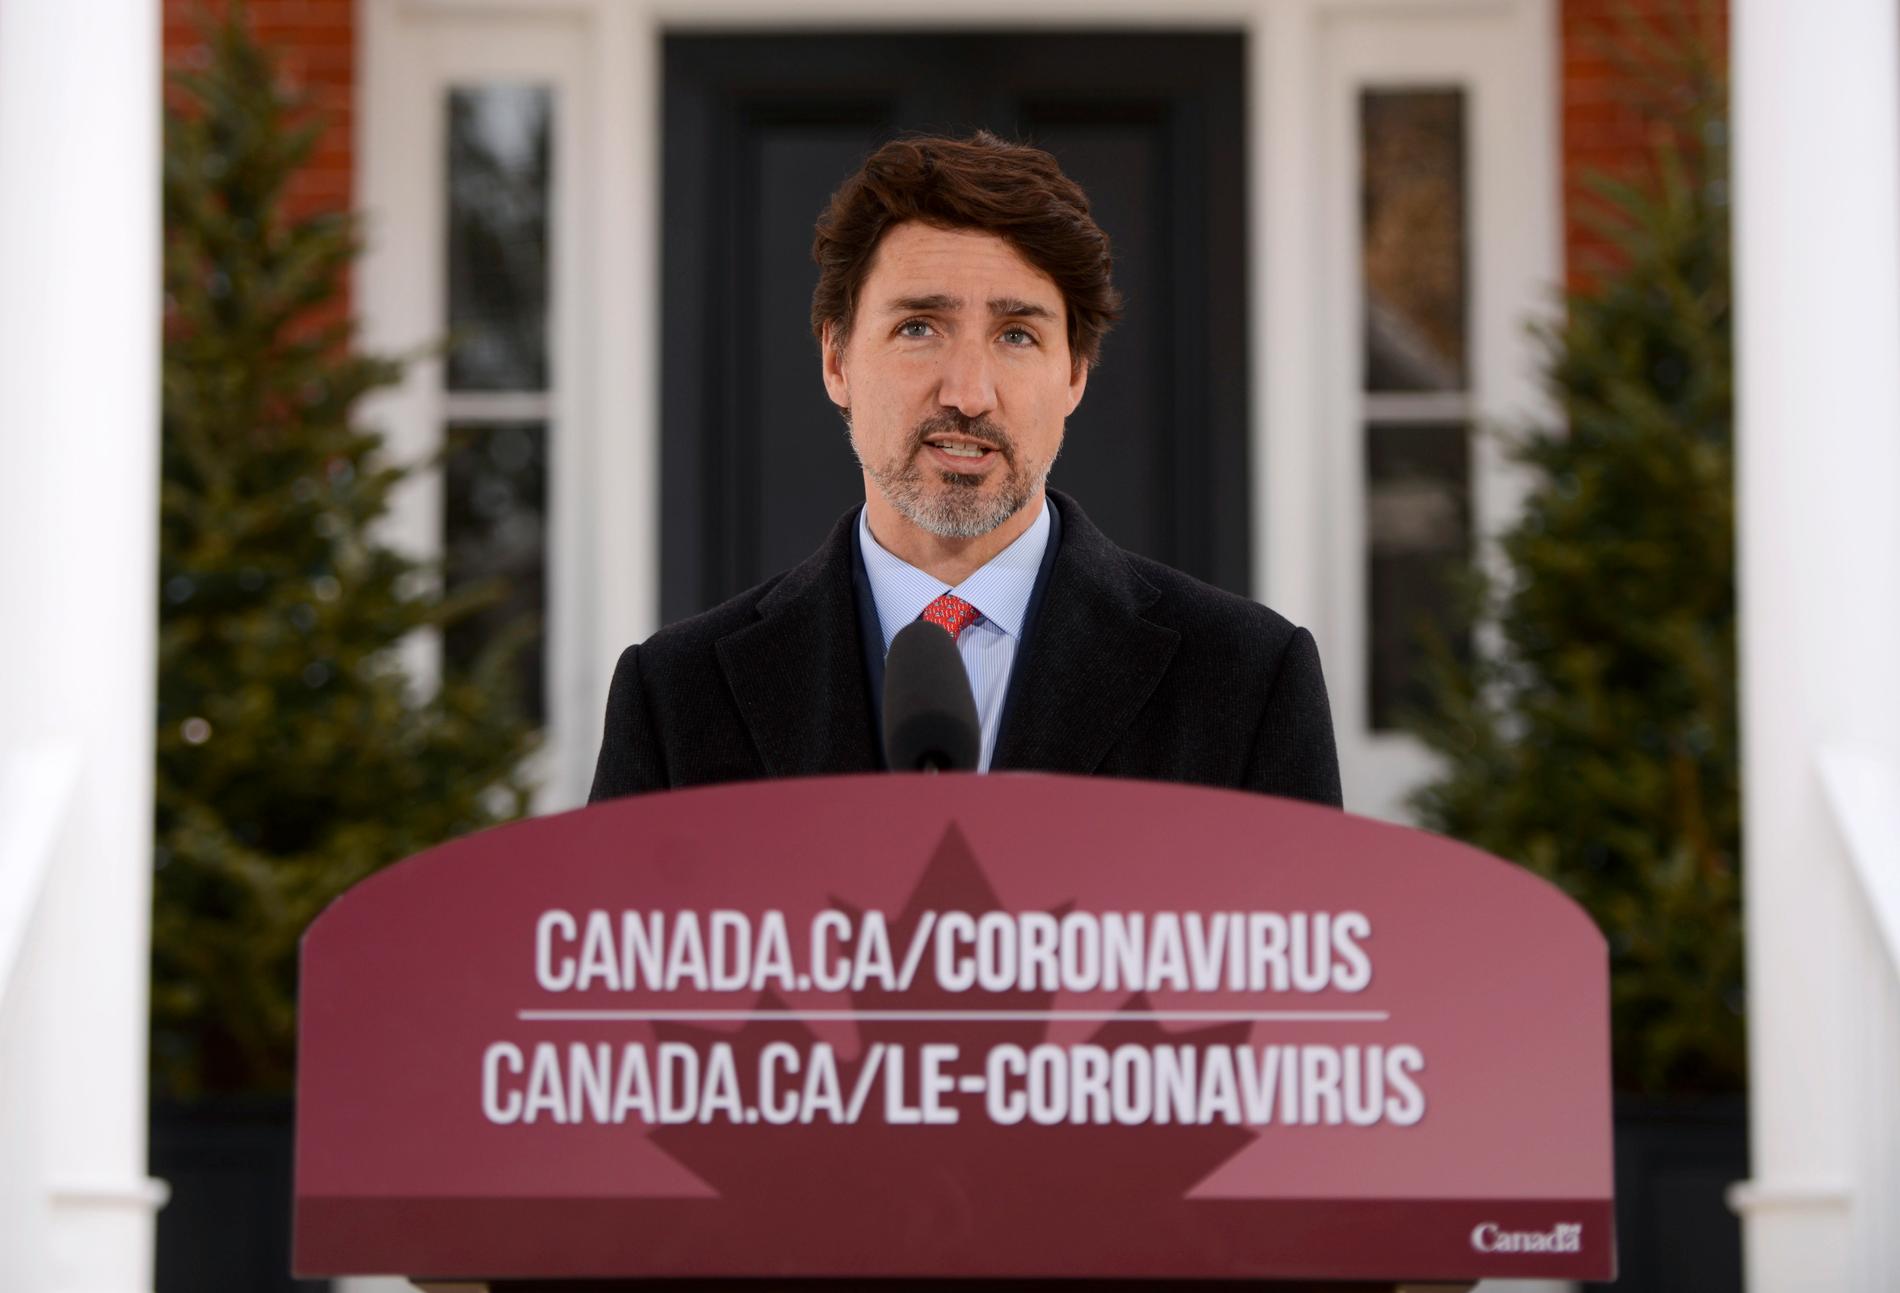 OTTAWA, KANADA Premiärminister Justin Trudeau håller ett tal till invånarna om coronasituationen i landet.